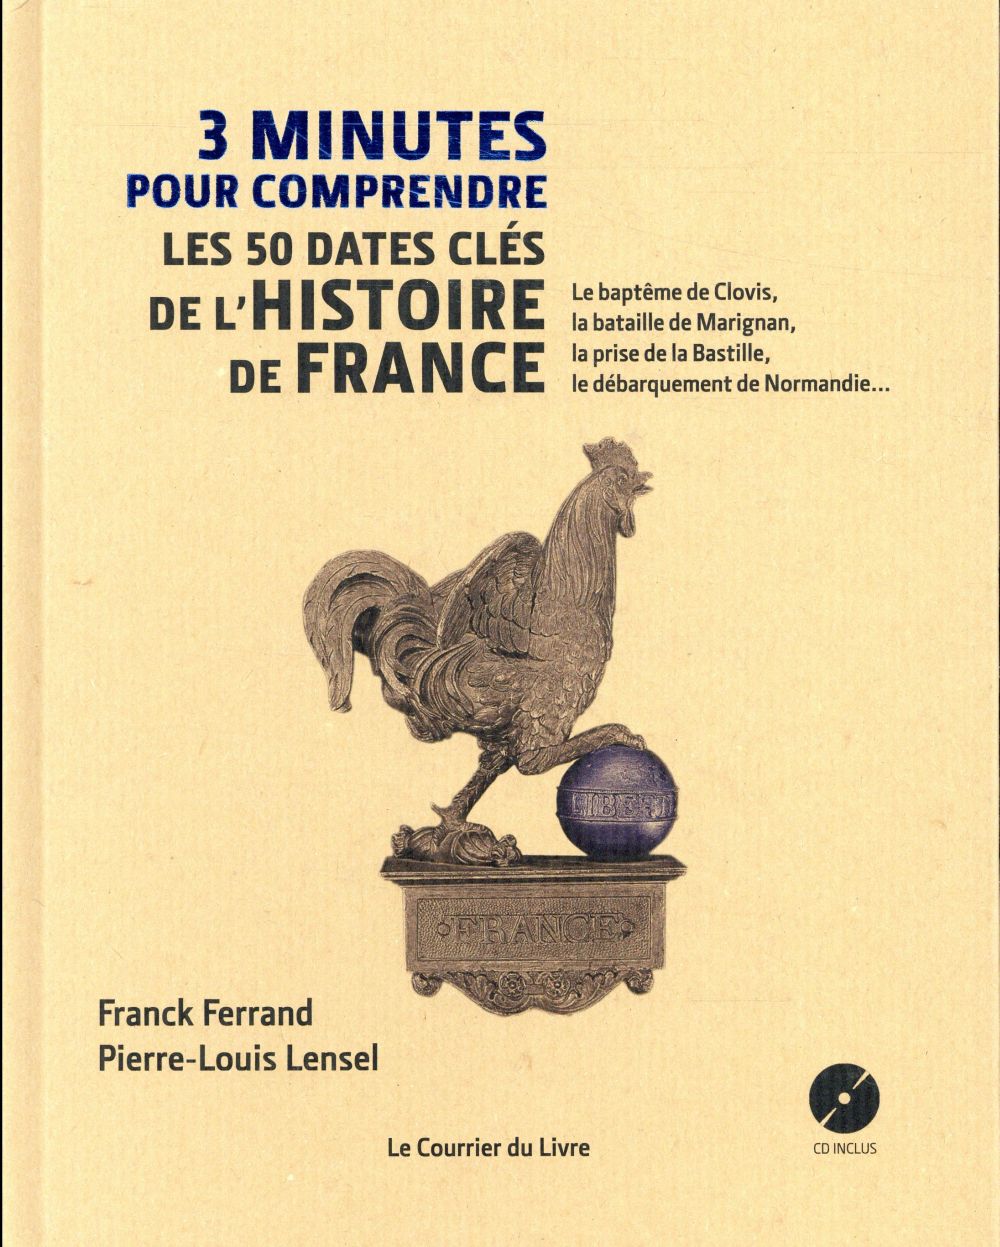 3 MINUTES POUR COMPRENDRE LES 50 DATES CLES DE L'HISTOIRE DE FRANCE (CD)